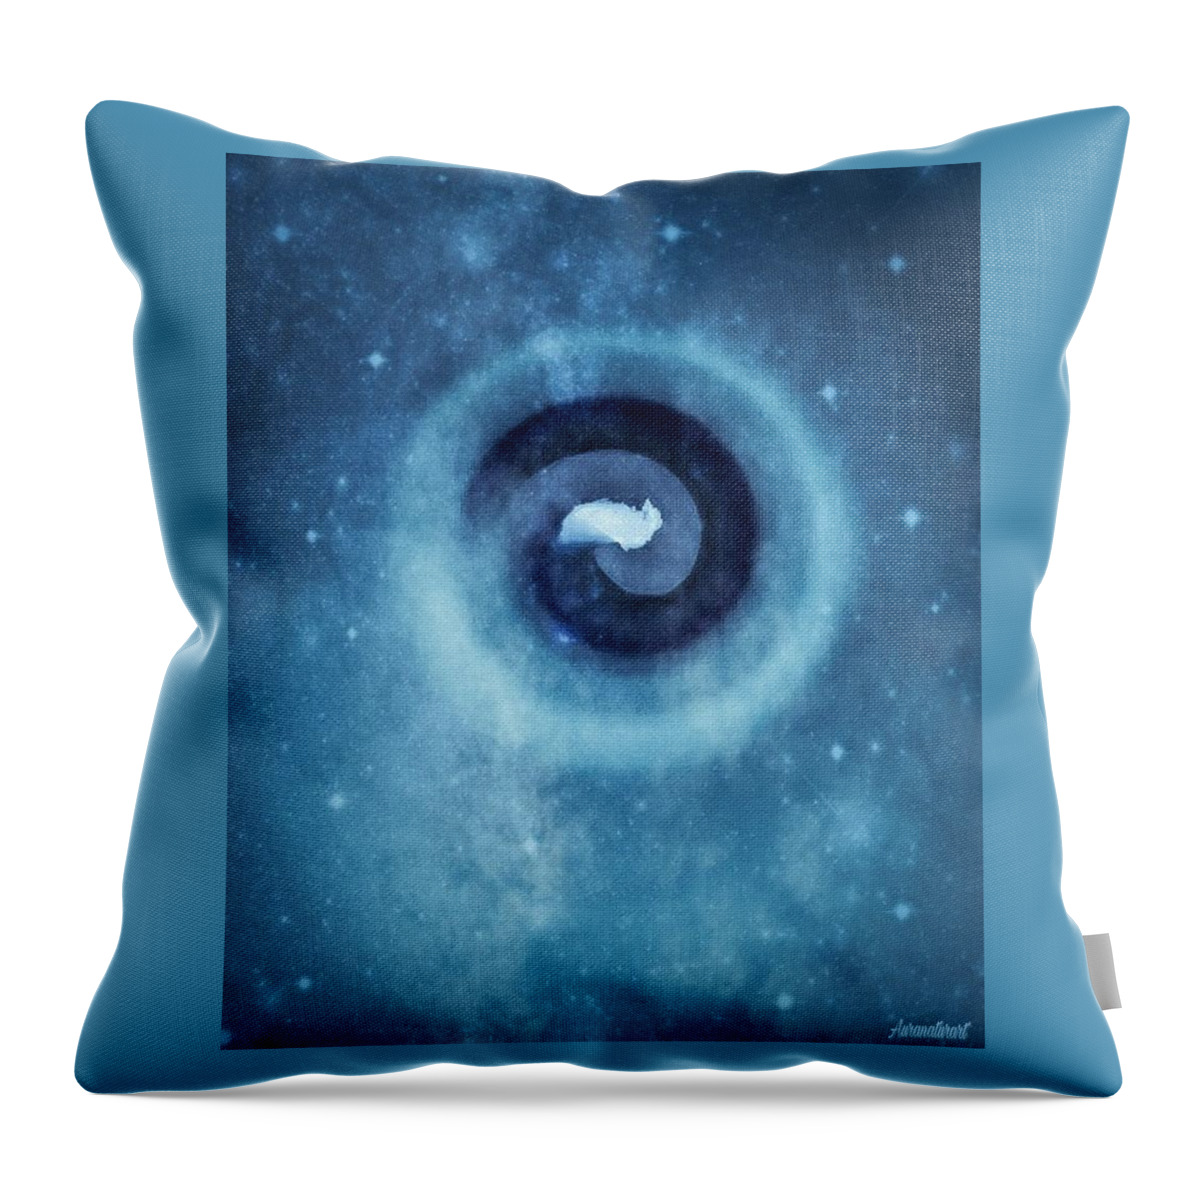 Spiral Throw Pillow featuring the digital art Spiral Original by Auranatura Art